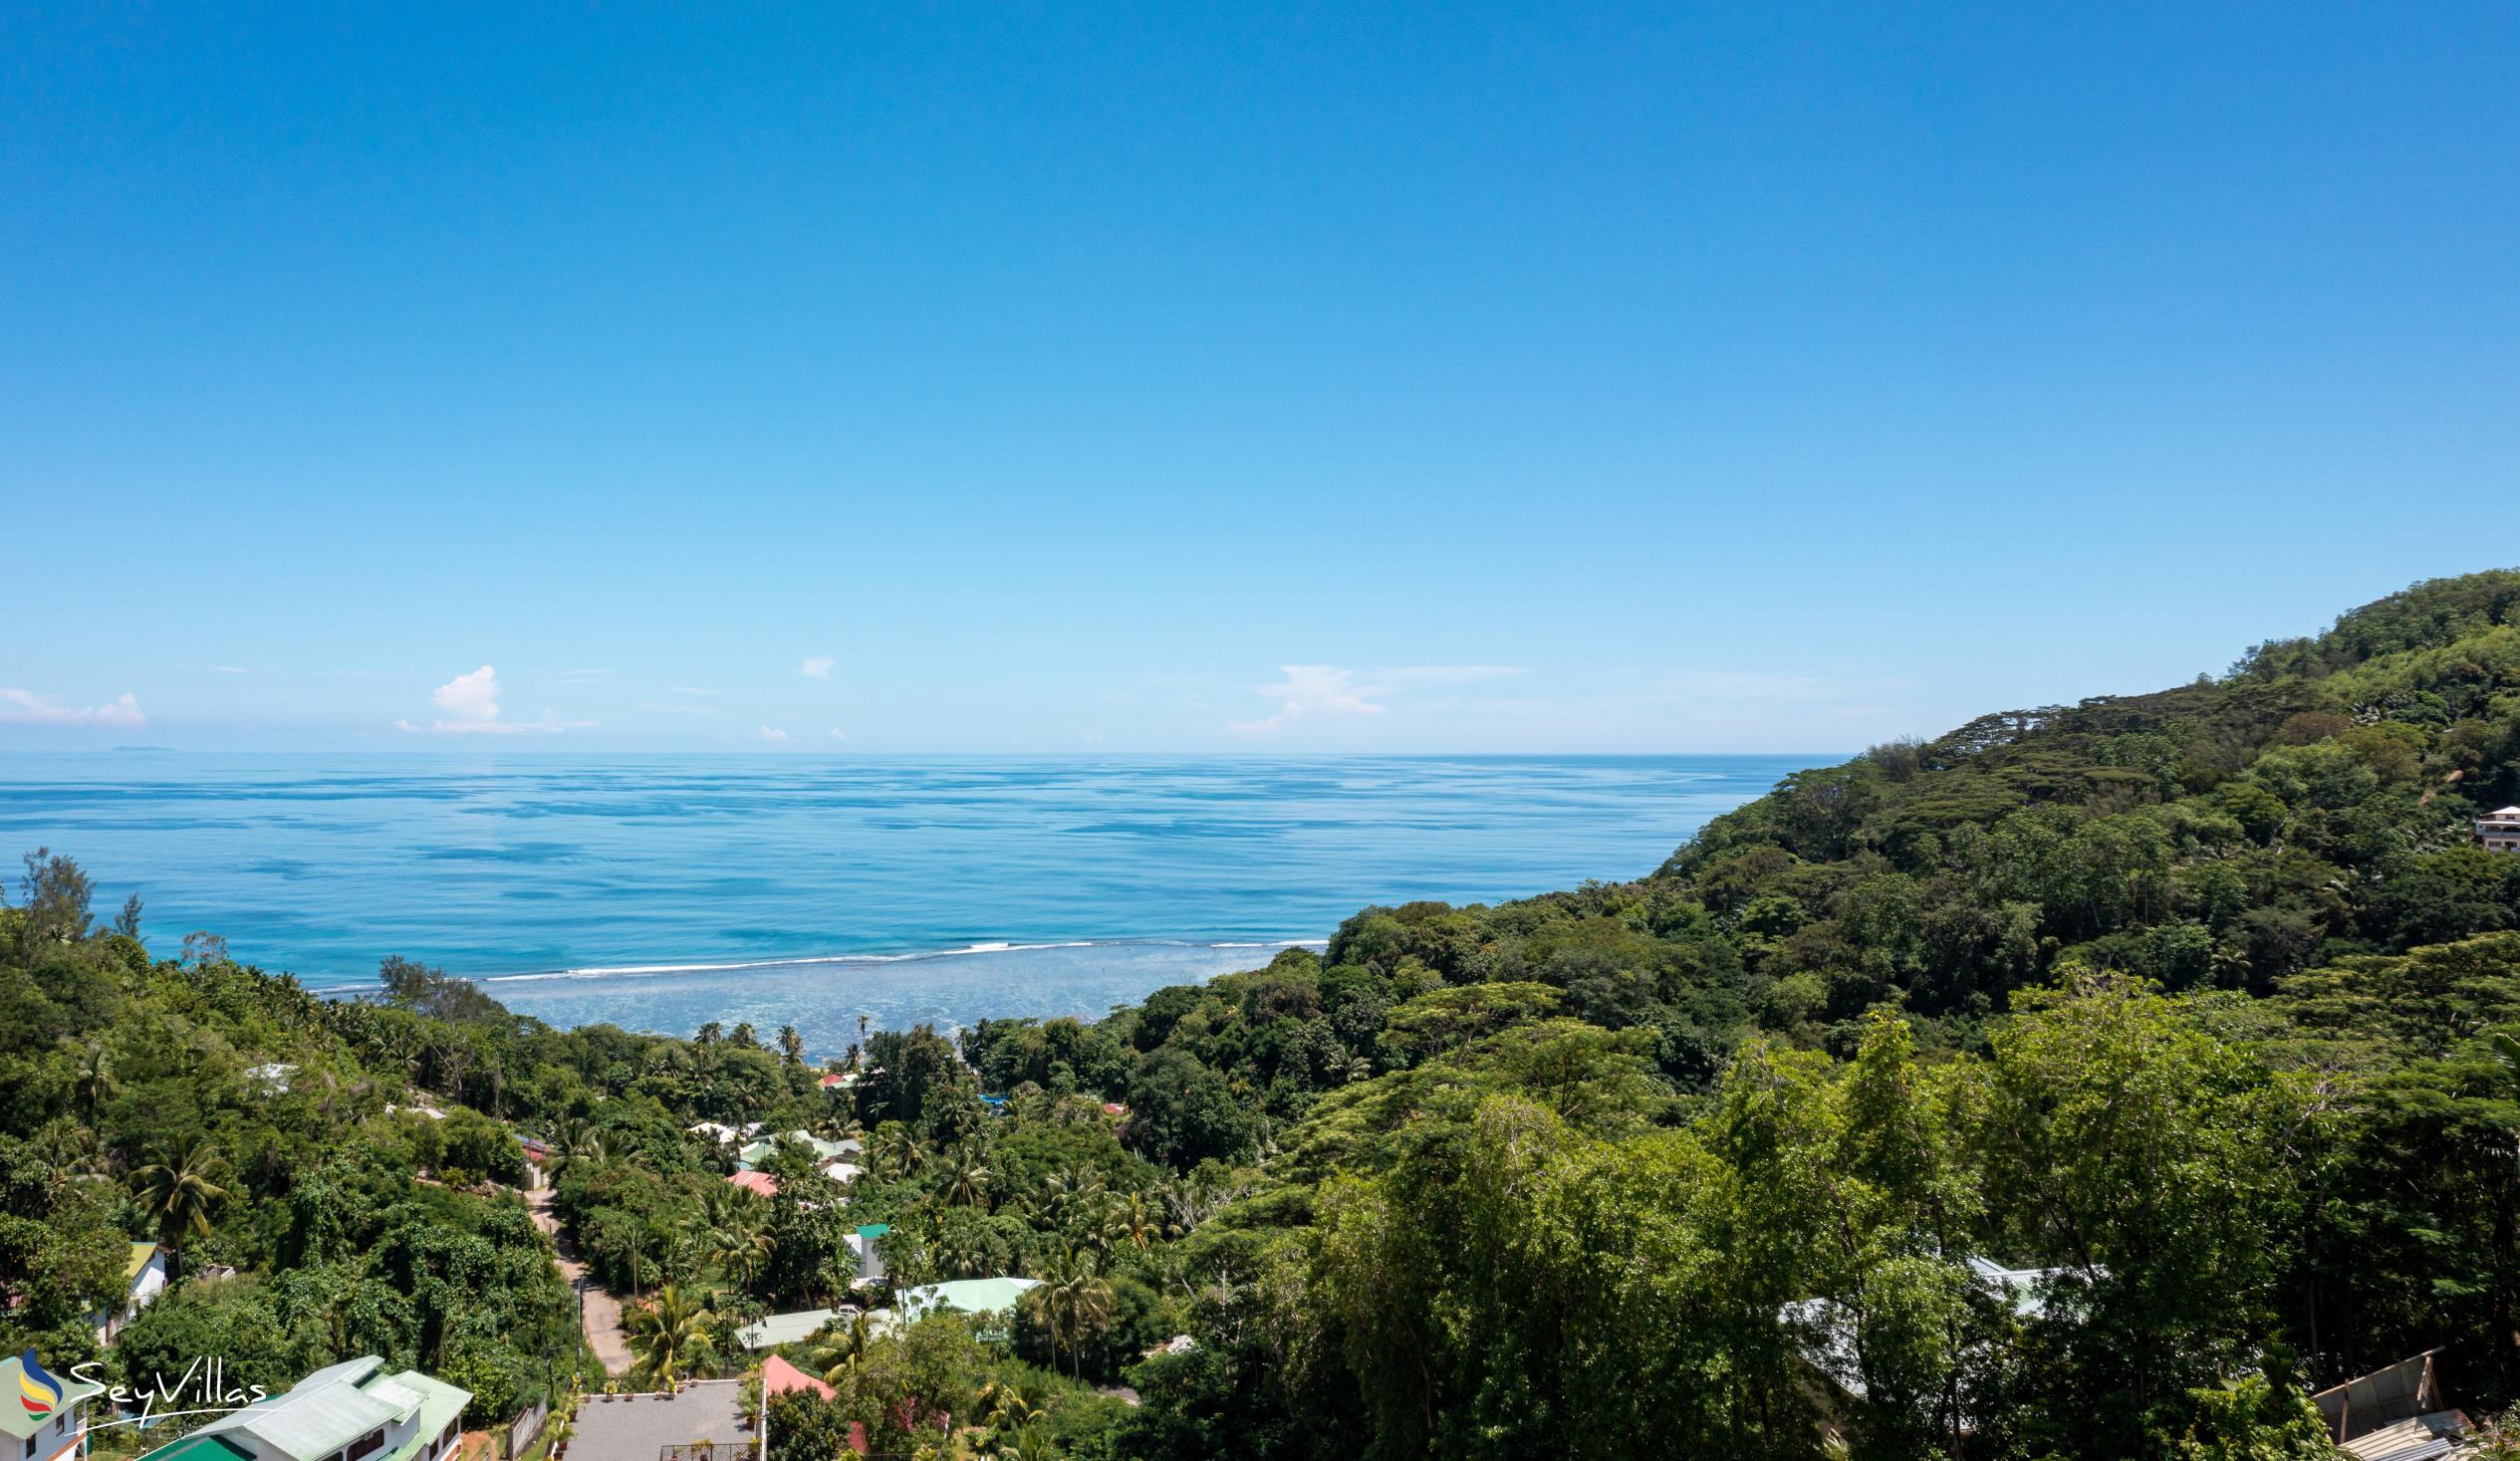 Foto 14: Hilltop Villa Bougainville - Posizione - Mahé (Seychelles)